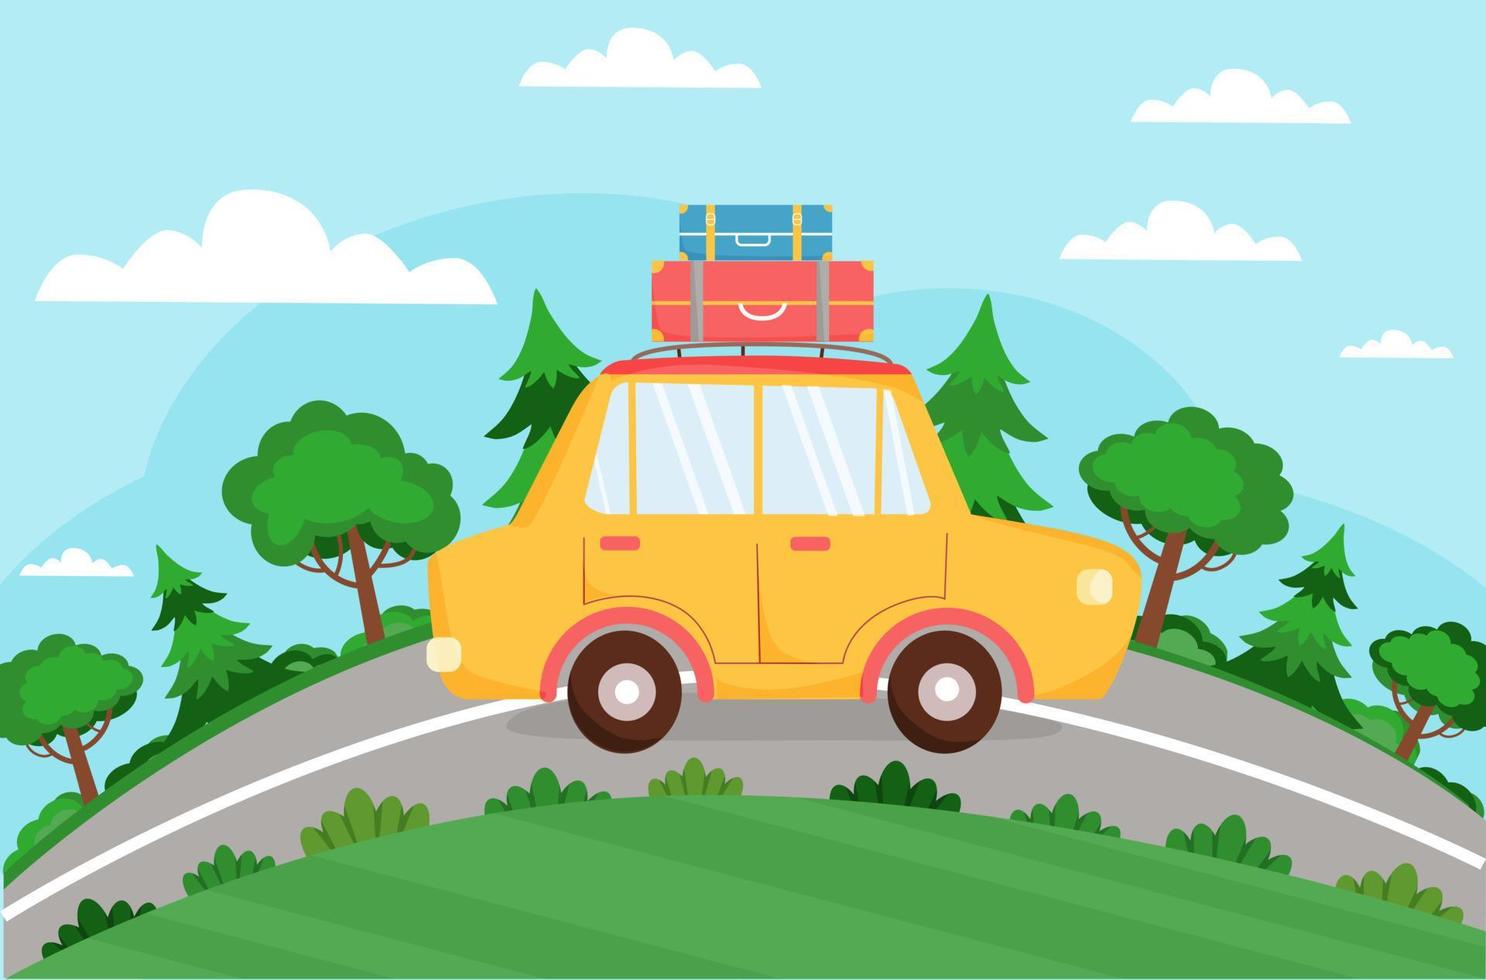 l'auto gialla con le valigie sta guidando sulla strada. sfondo estivo con auto, strada, alberi. vacanza, turismo, viaggio estivo, vacanza. illustrazione vettoriale in stile piatto.